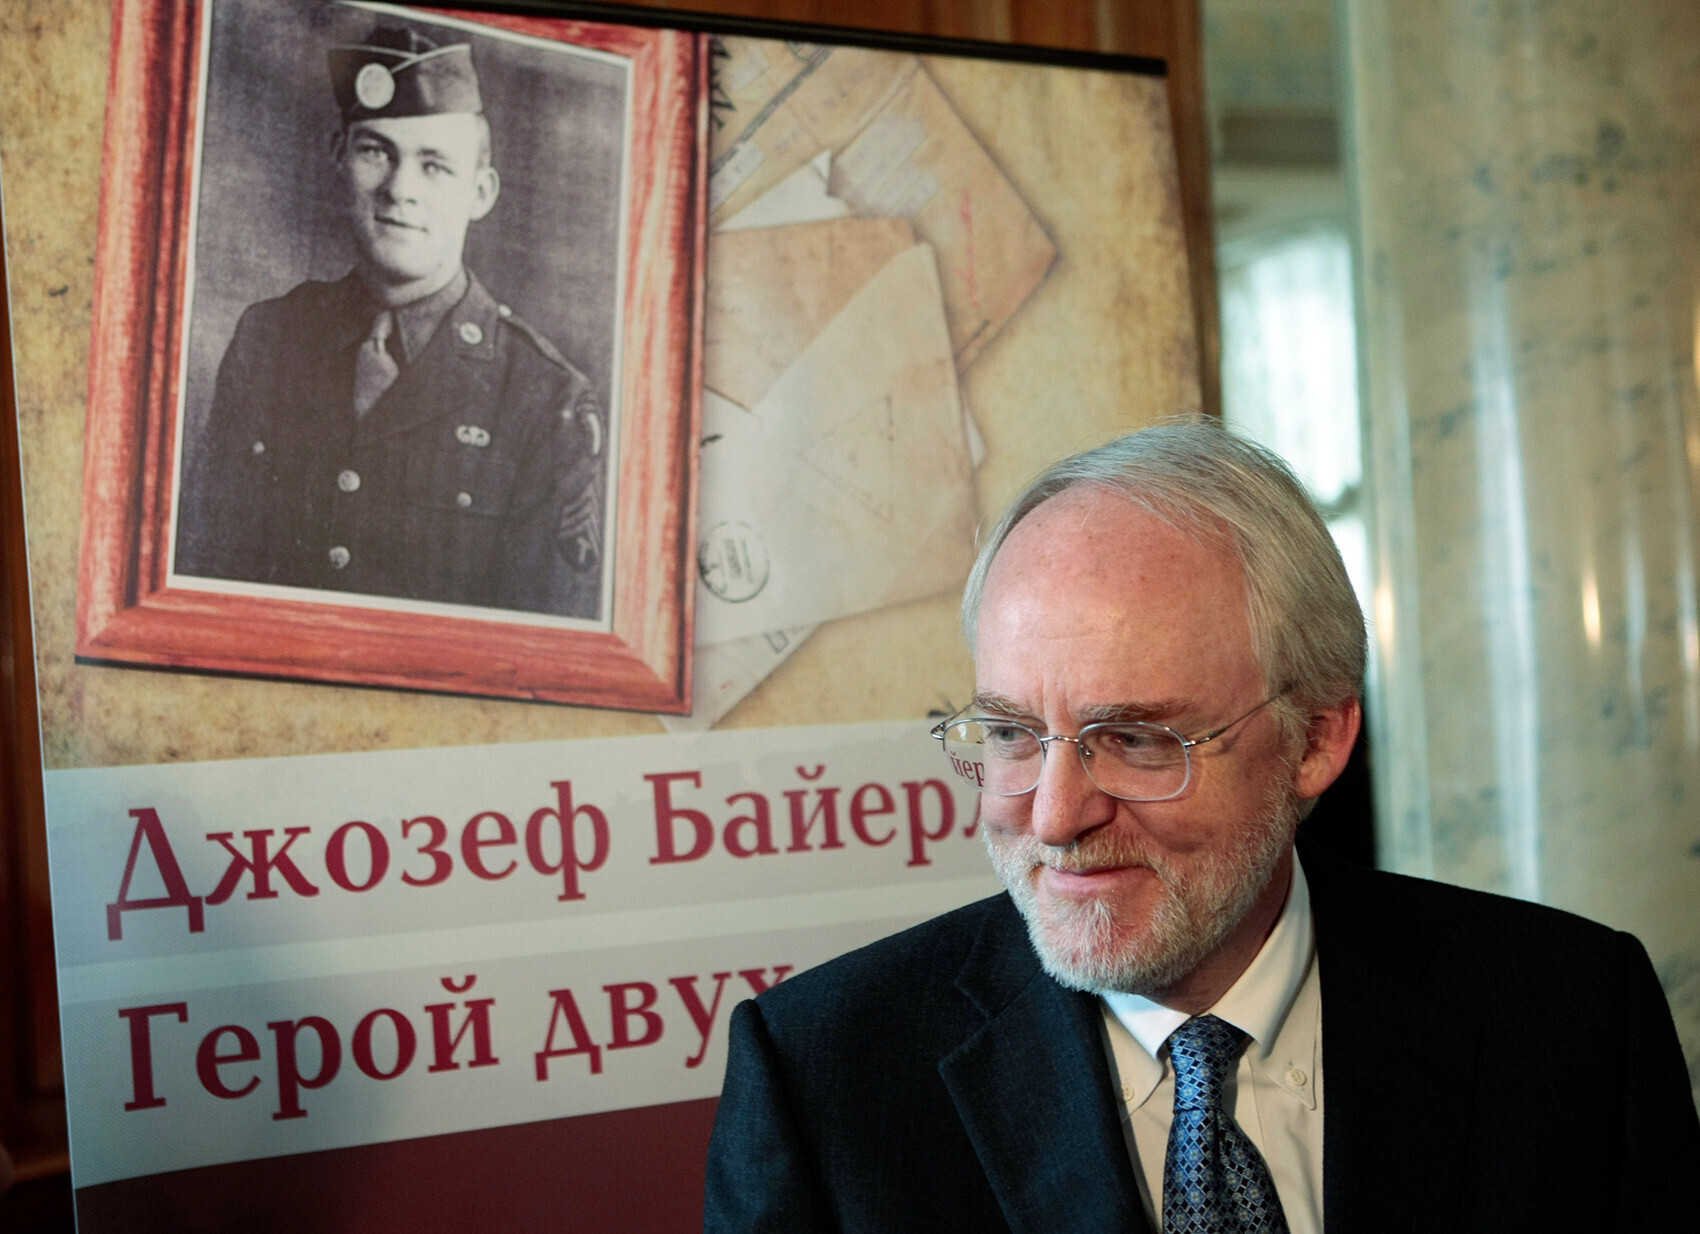 John Beyrle, Josephov sin, veleposlanik ZDA v Moskvi med letoma 2008 in 2012, ob sliki Josepha Beyrleja
